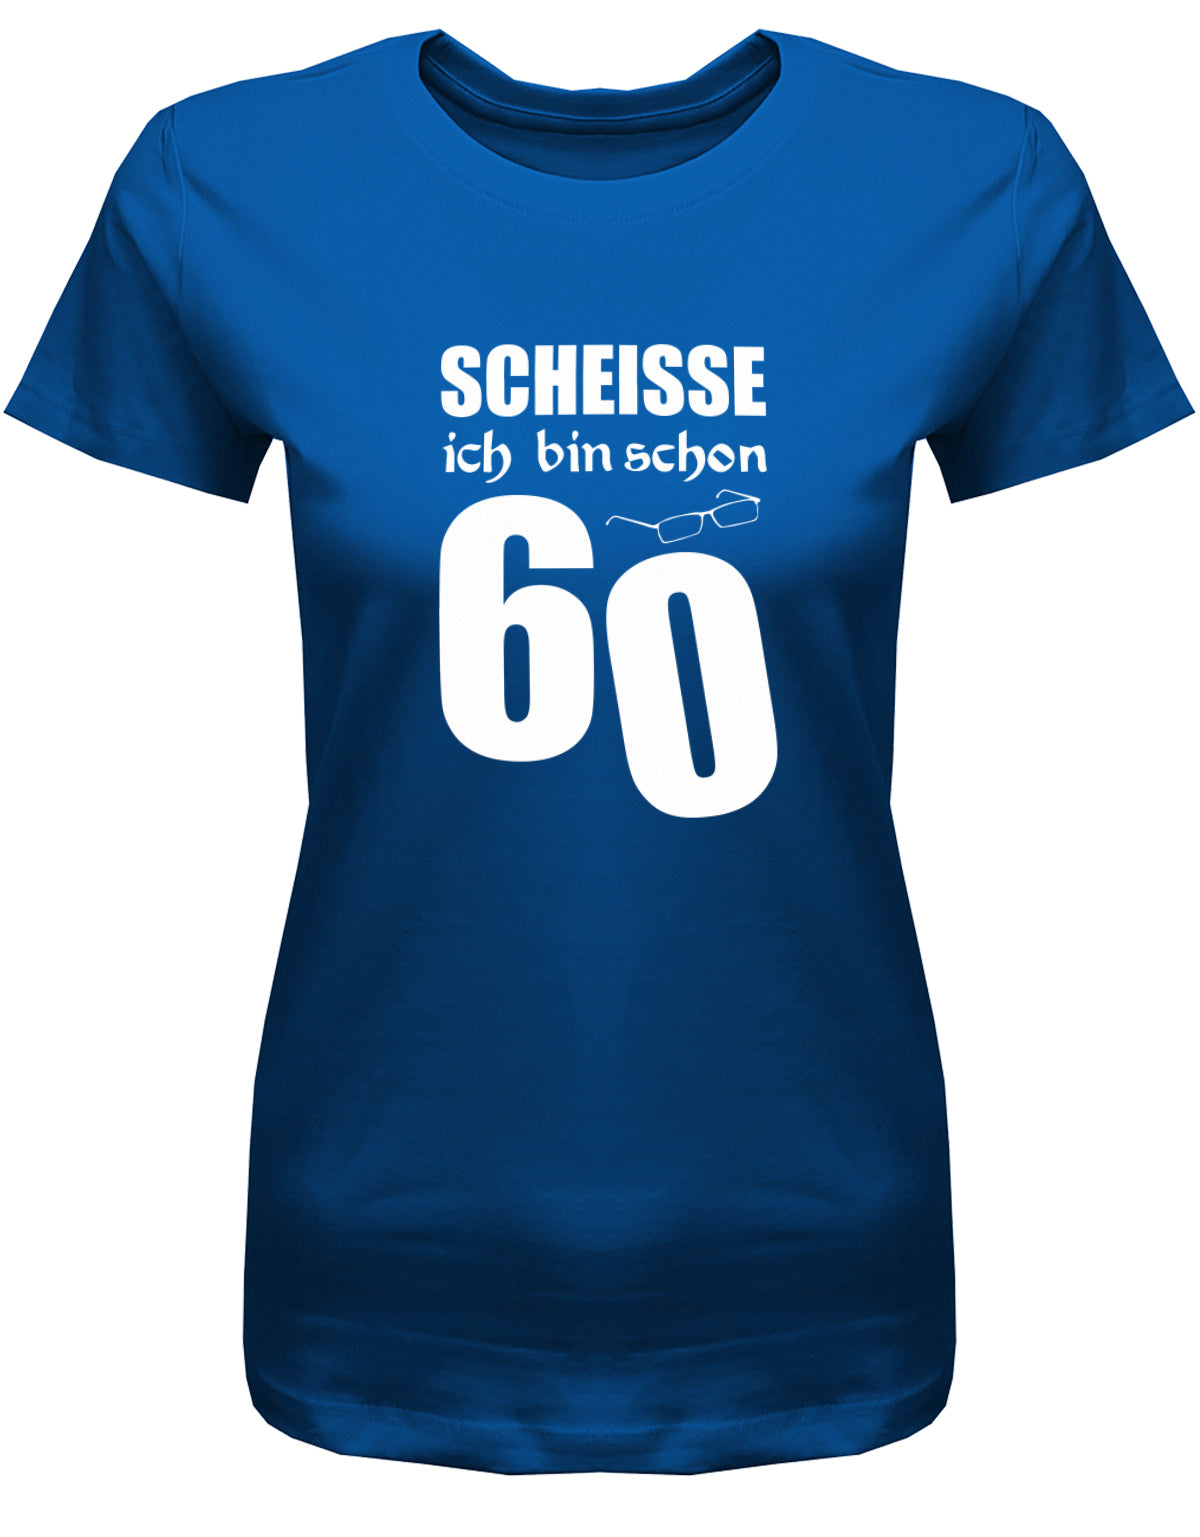 Lustiges T-Shirt zum 60. Geburtstag für die Frau Bedruckt mit Scheisse ich bin schon 60 Lesebrille. Royalblau